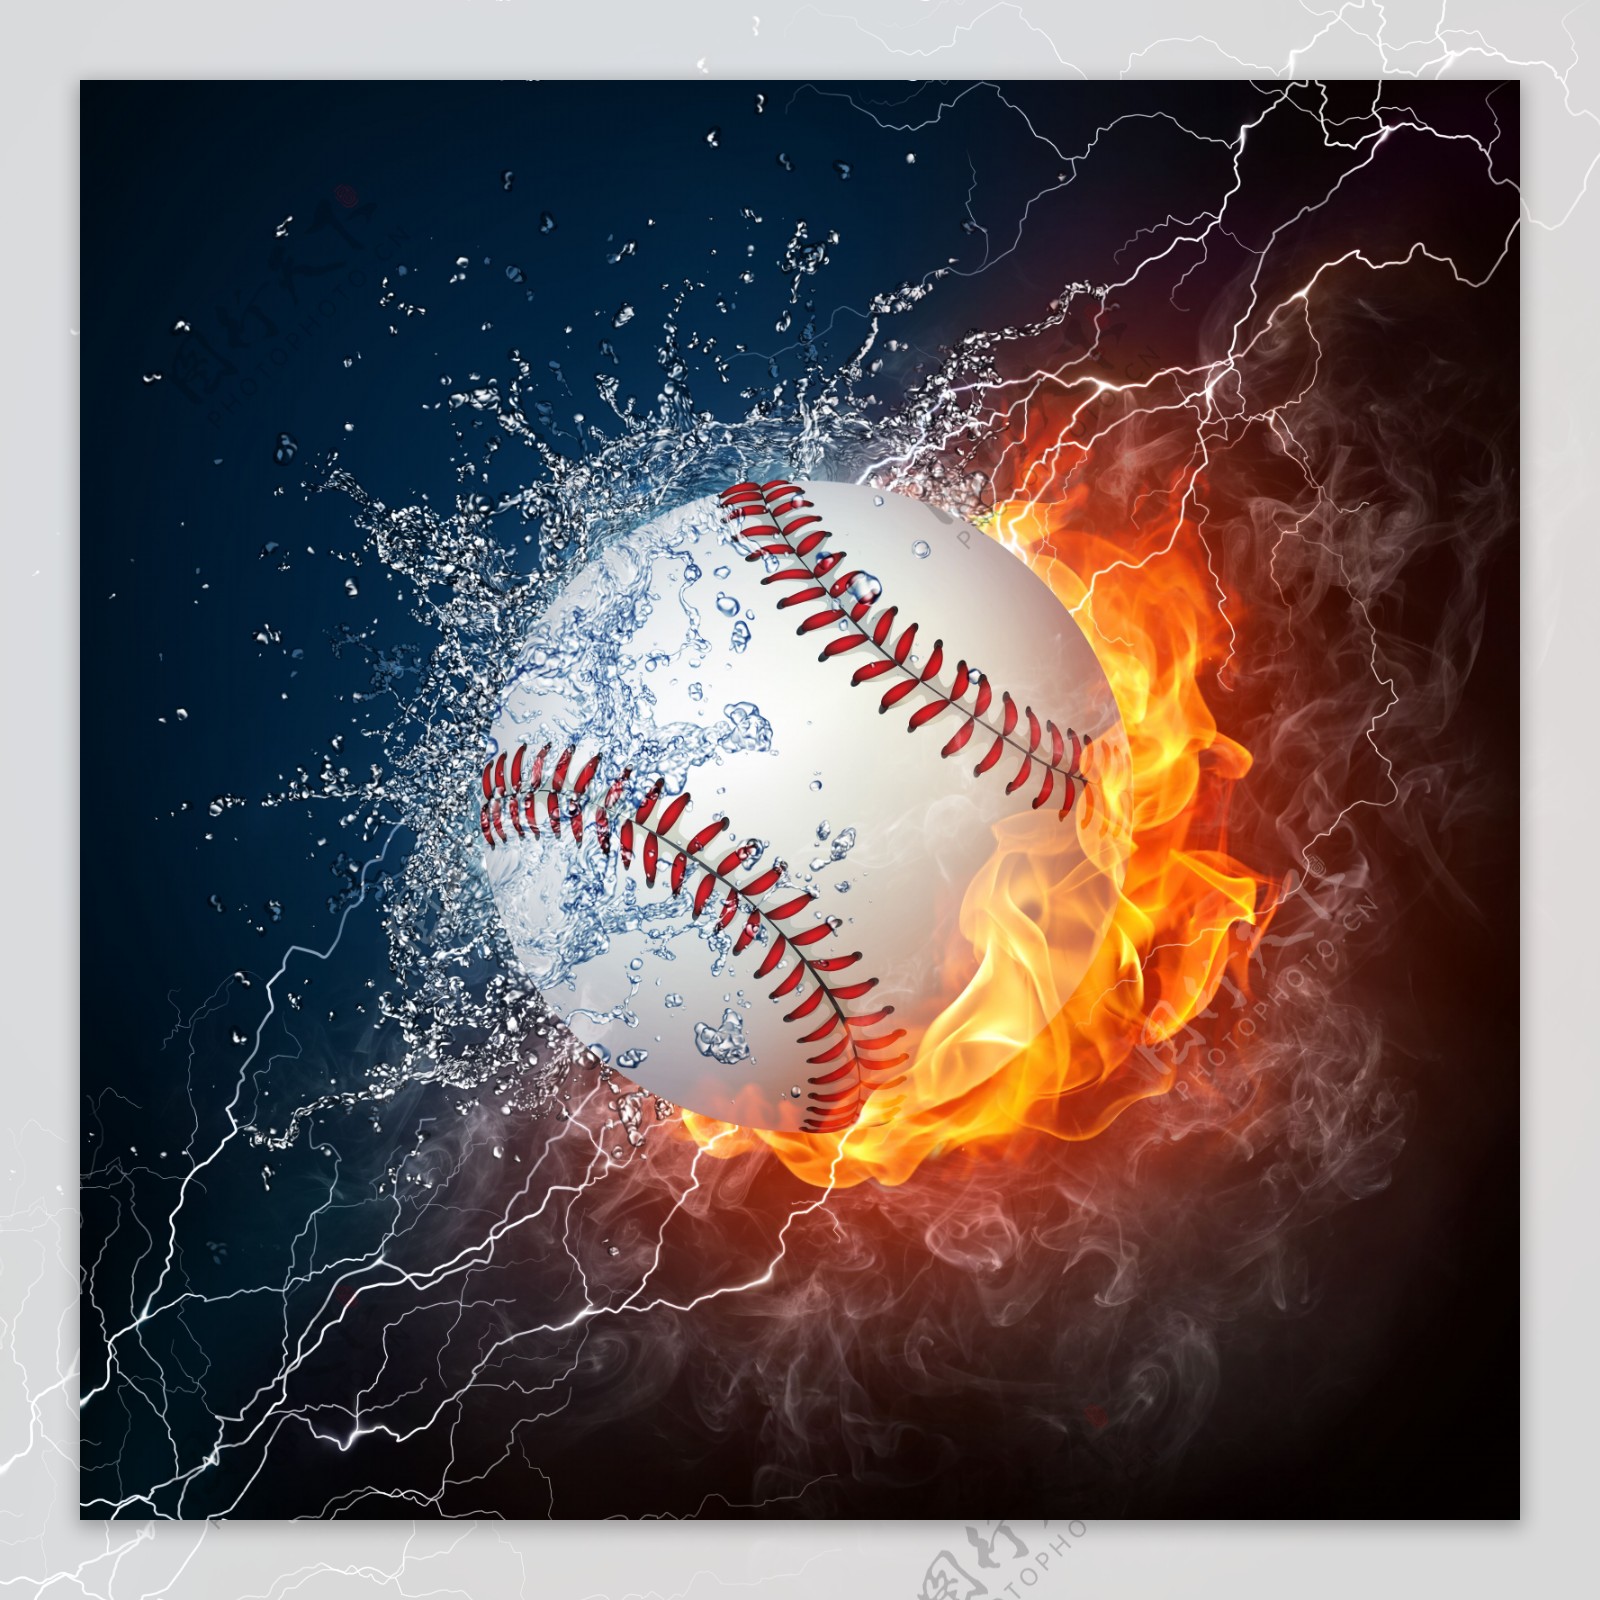 水珠火焰与棒球图片